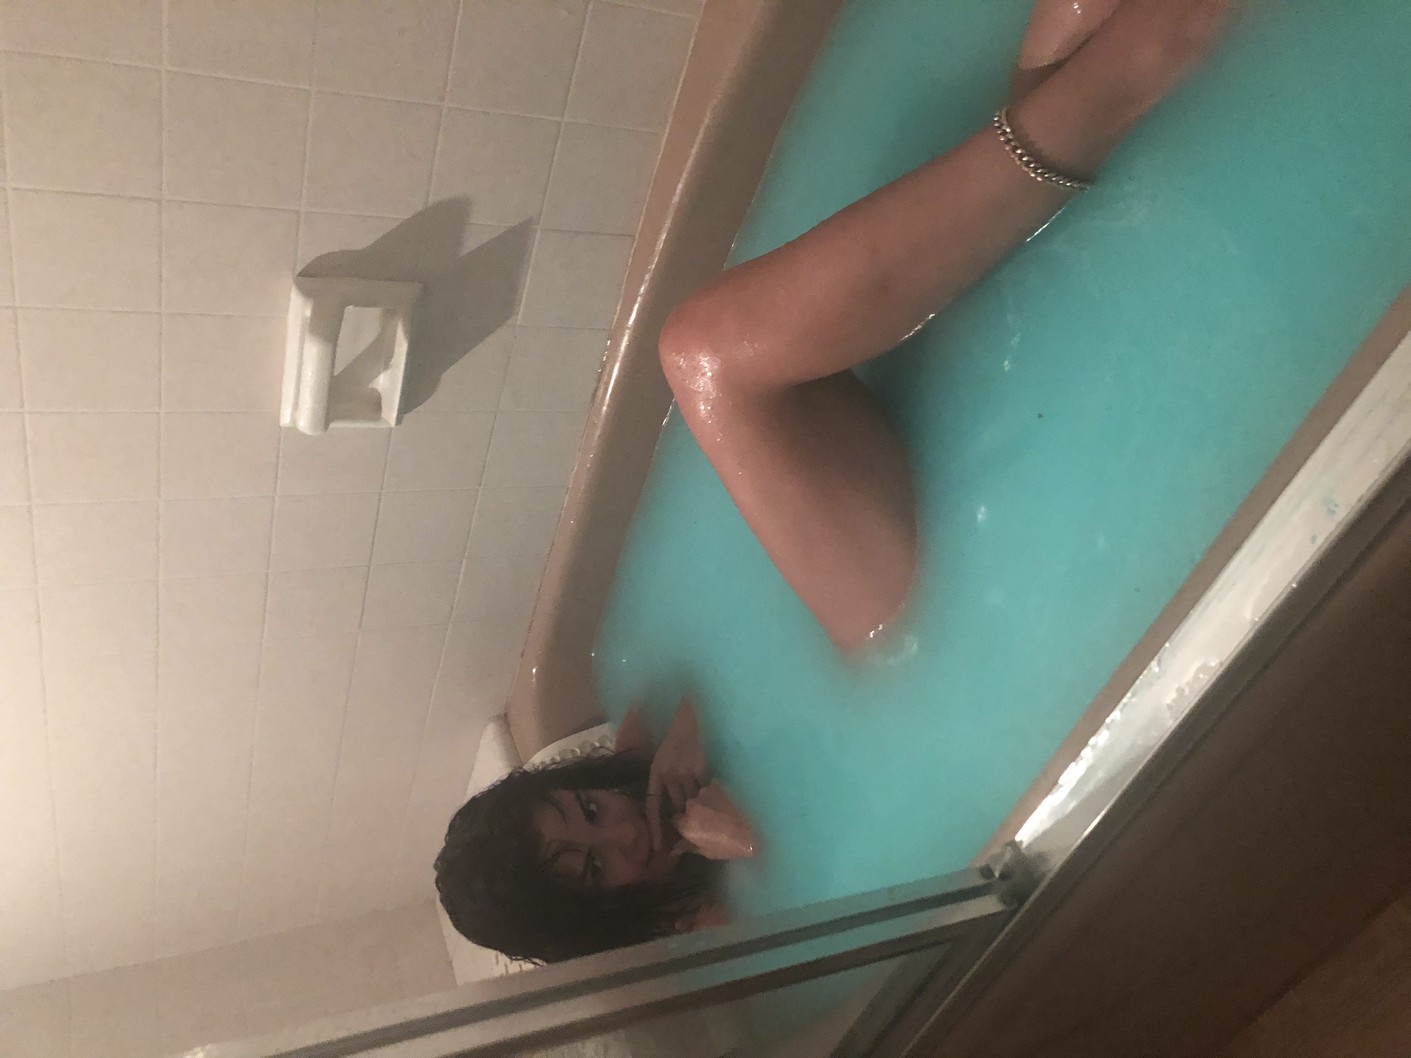 Хакеры слили в Сети фото голой Селены Гомес во время заплыва в ванной.